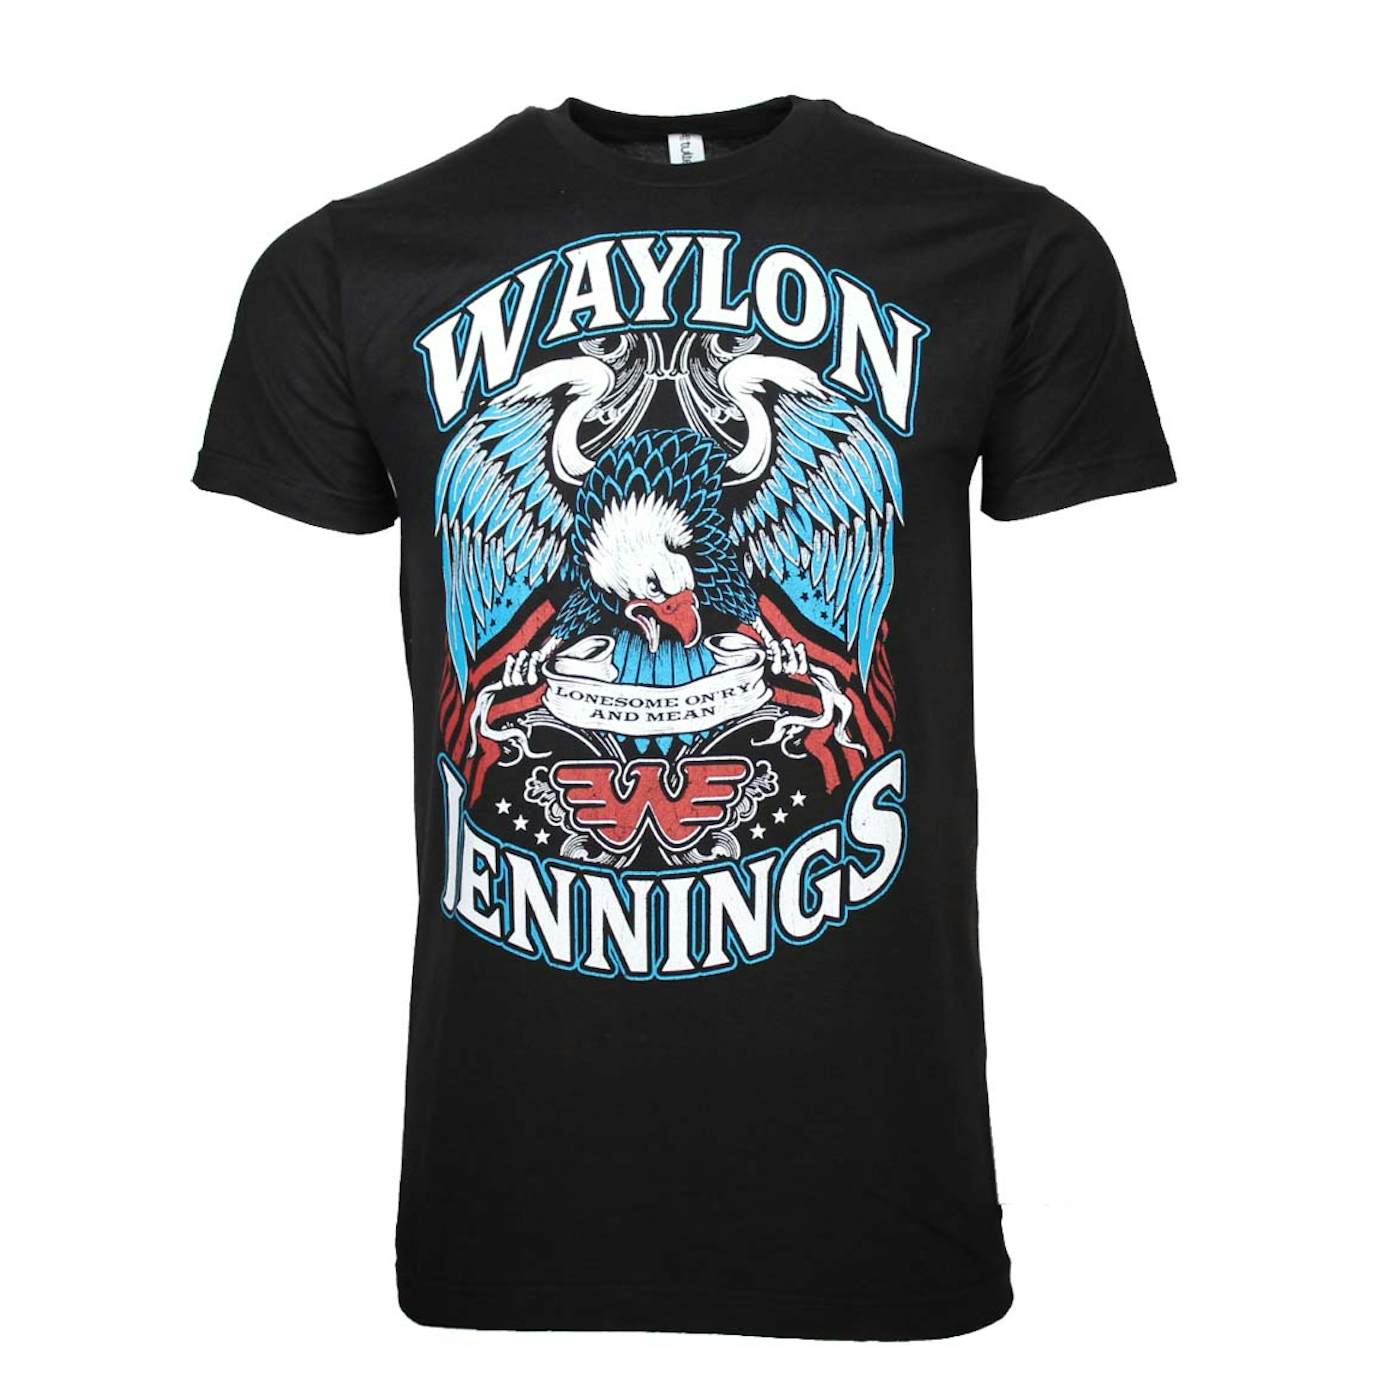 Waylon Jennings T Shirt | Waylon Jennings Lonesome T-Shirt